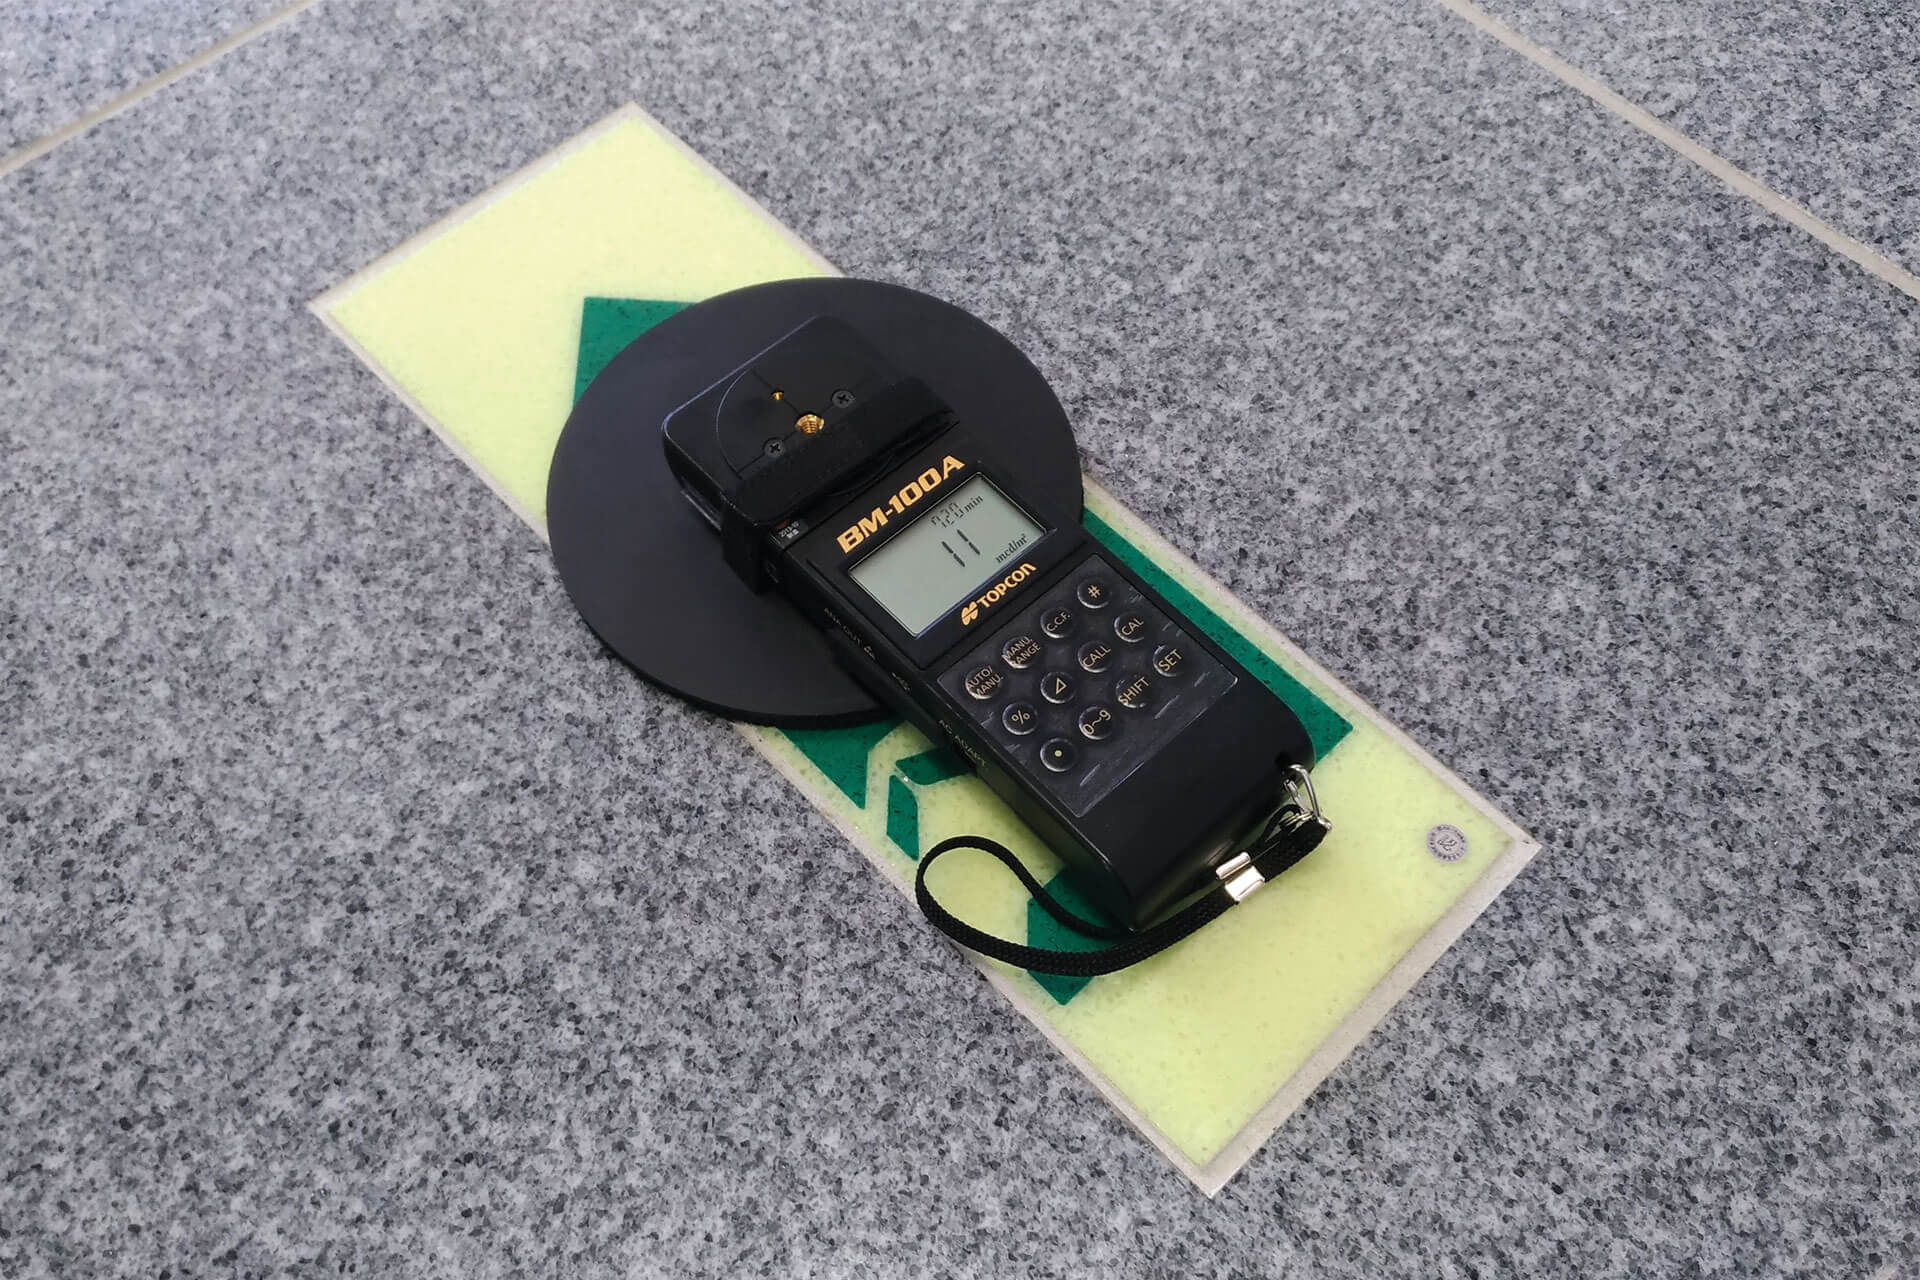 トプコンテクノハウス社製の輝度測定器（BM-100A）で輝度測定中